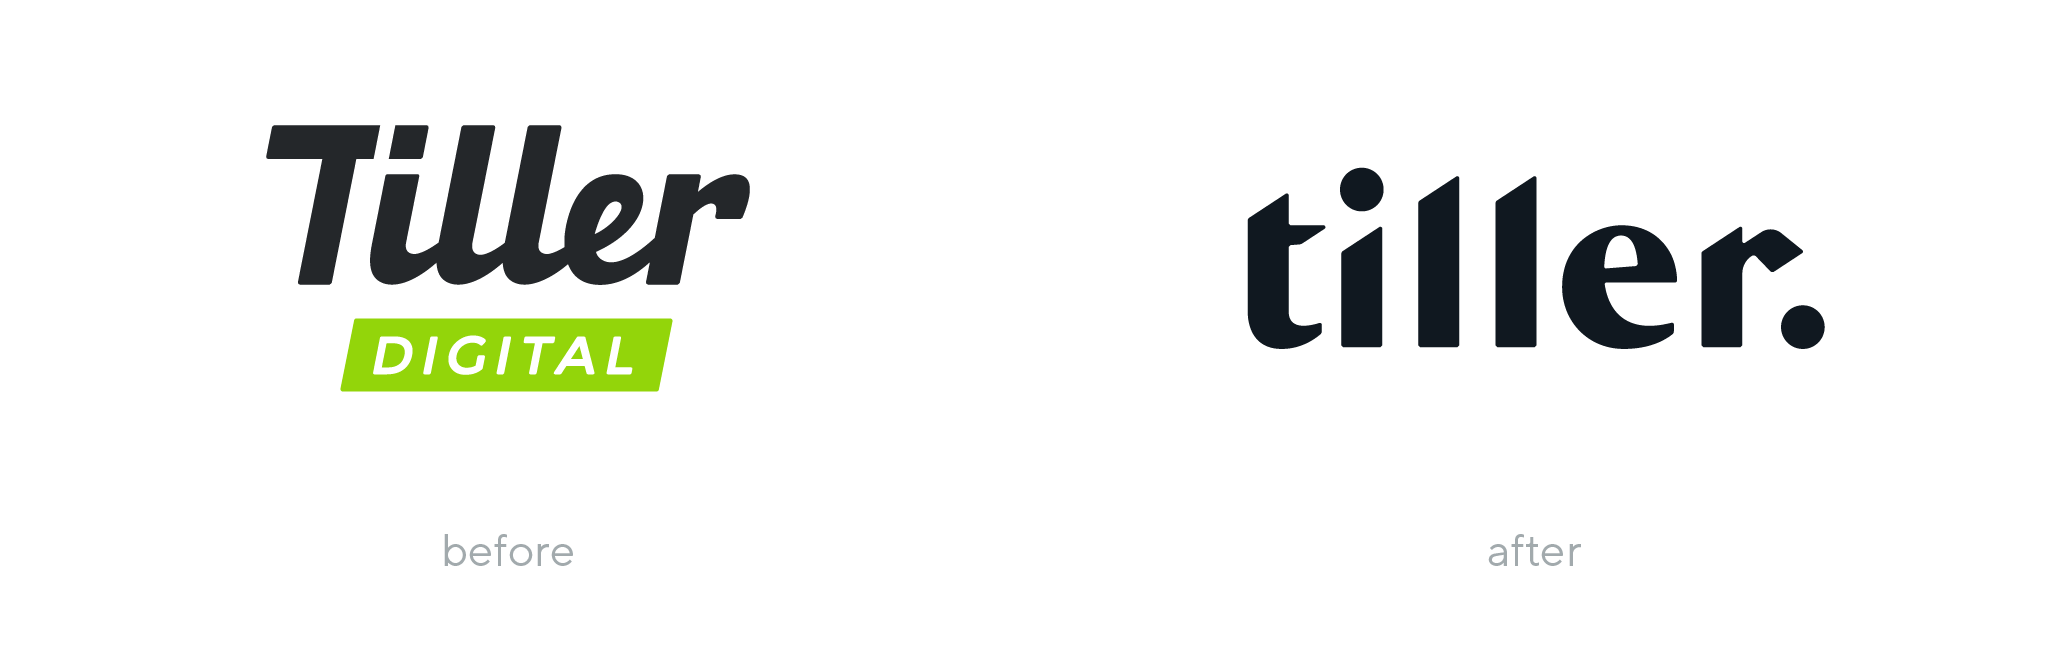 Tiller logo before and after rebranding